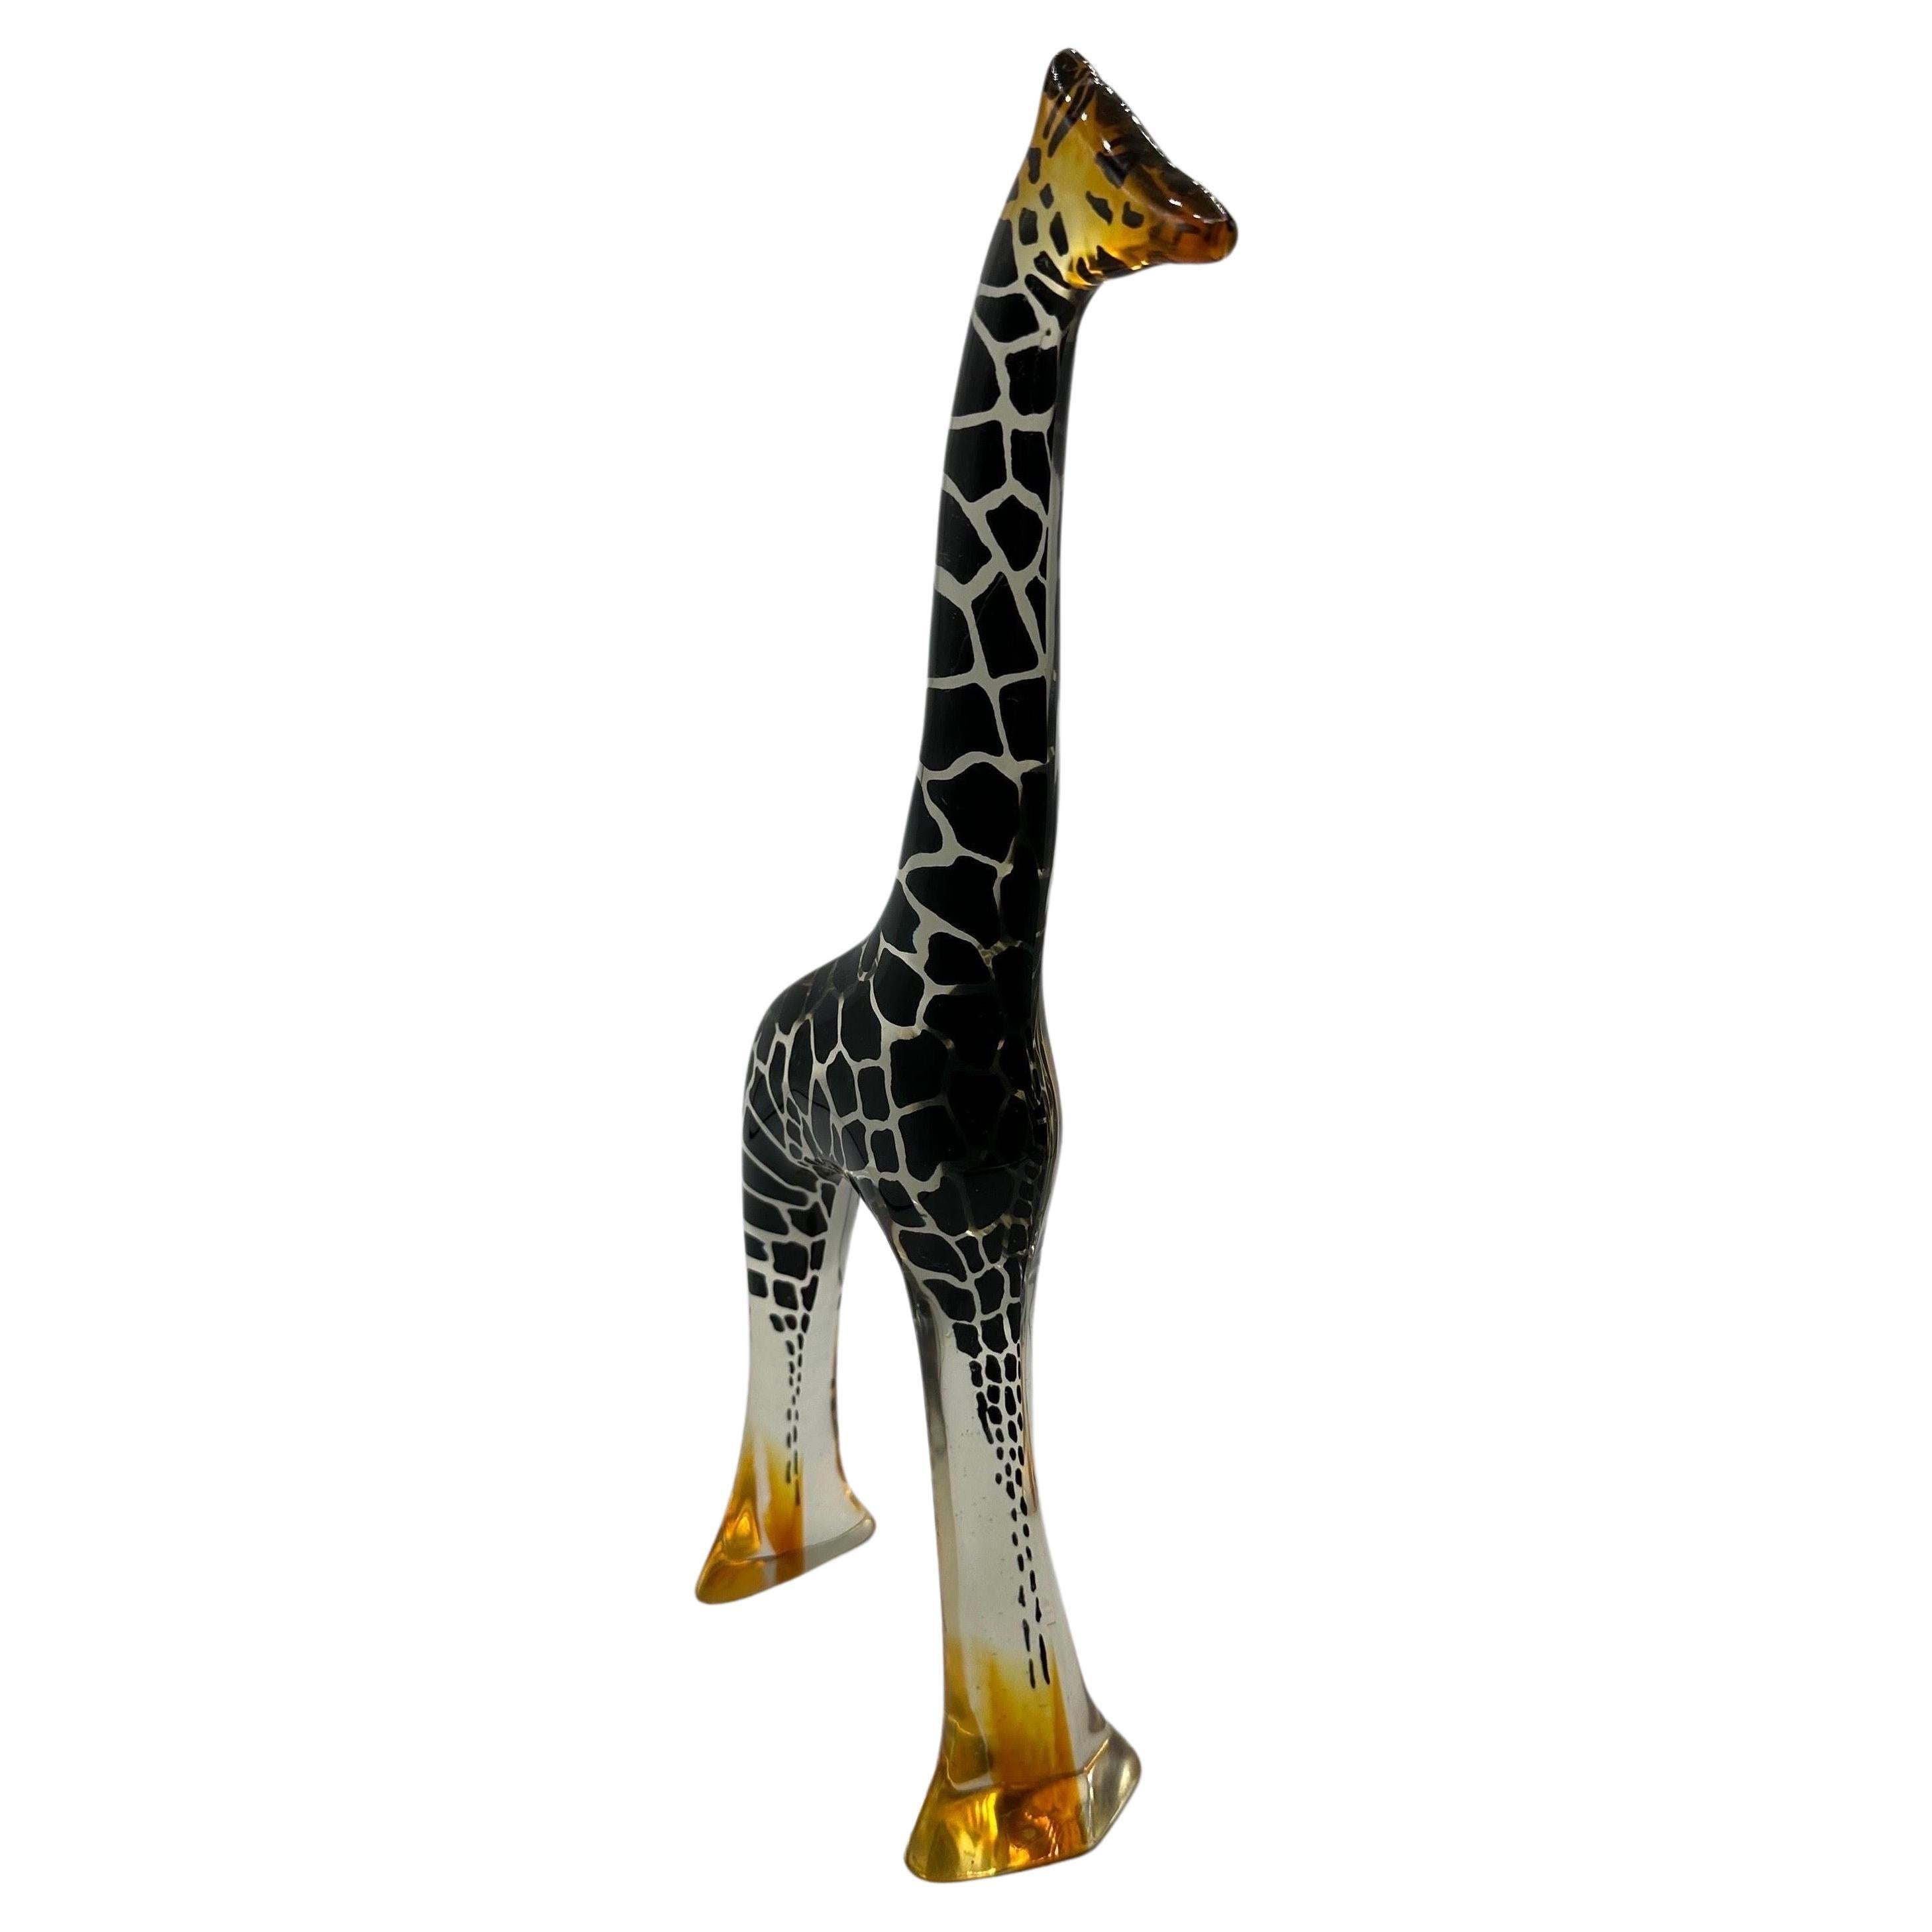 Magnifique sculpture de girafe en résine de grande taille réalisée par l'artiste brésilien Araham Palatnik.  Les détails du contour noir sont enfermés dans une résine transparente avec une ombre jaune à la base. 